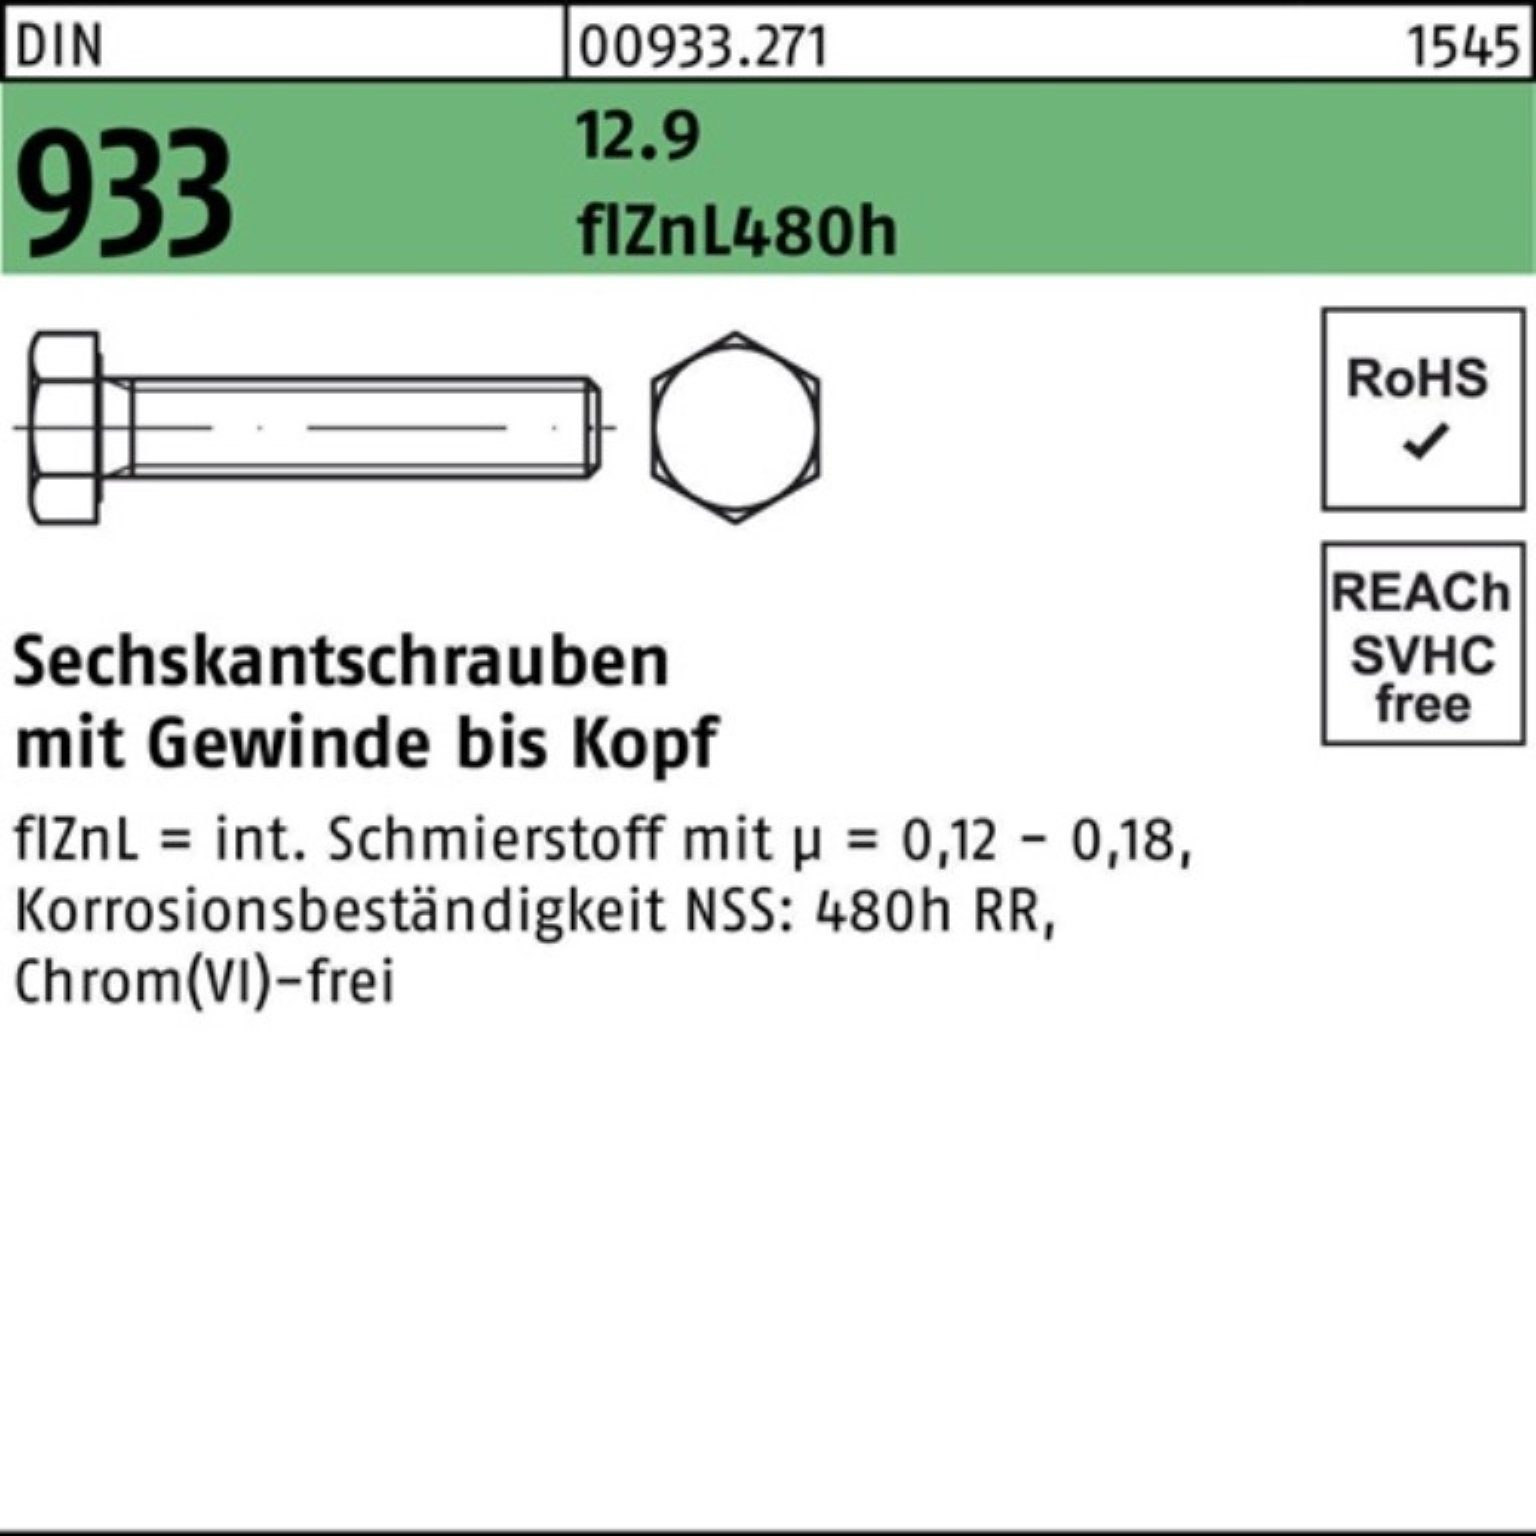 Reyher Sechskantschraube 200er Pack Sechskantschraube DIN 933 VG M8x 30 12.9 flZnL 480h zinklam